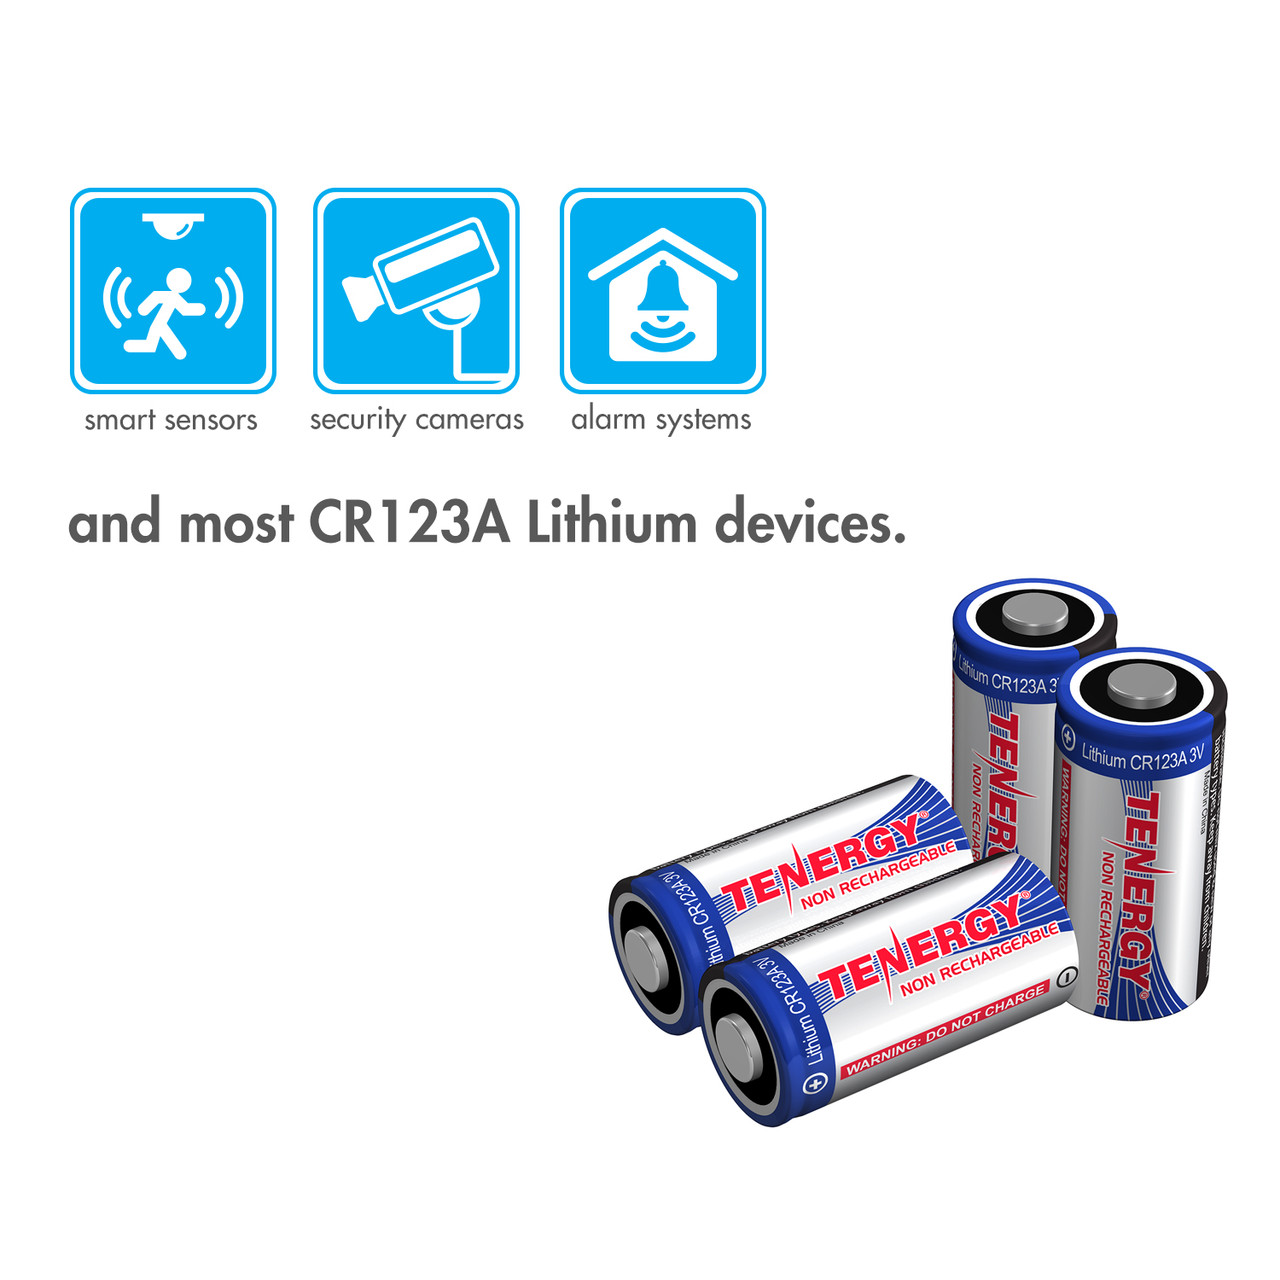 Pile(s) Pile lithium blister CR123 3V 1550mAh Enix